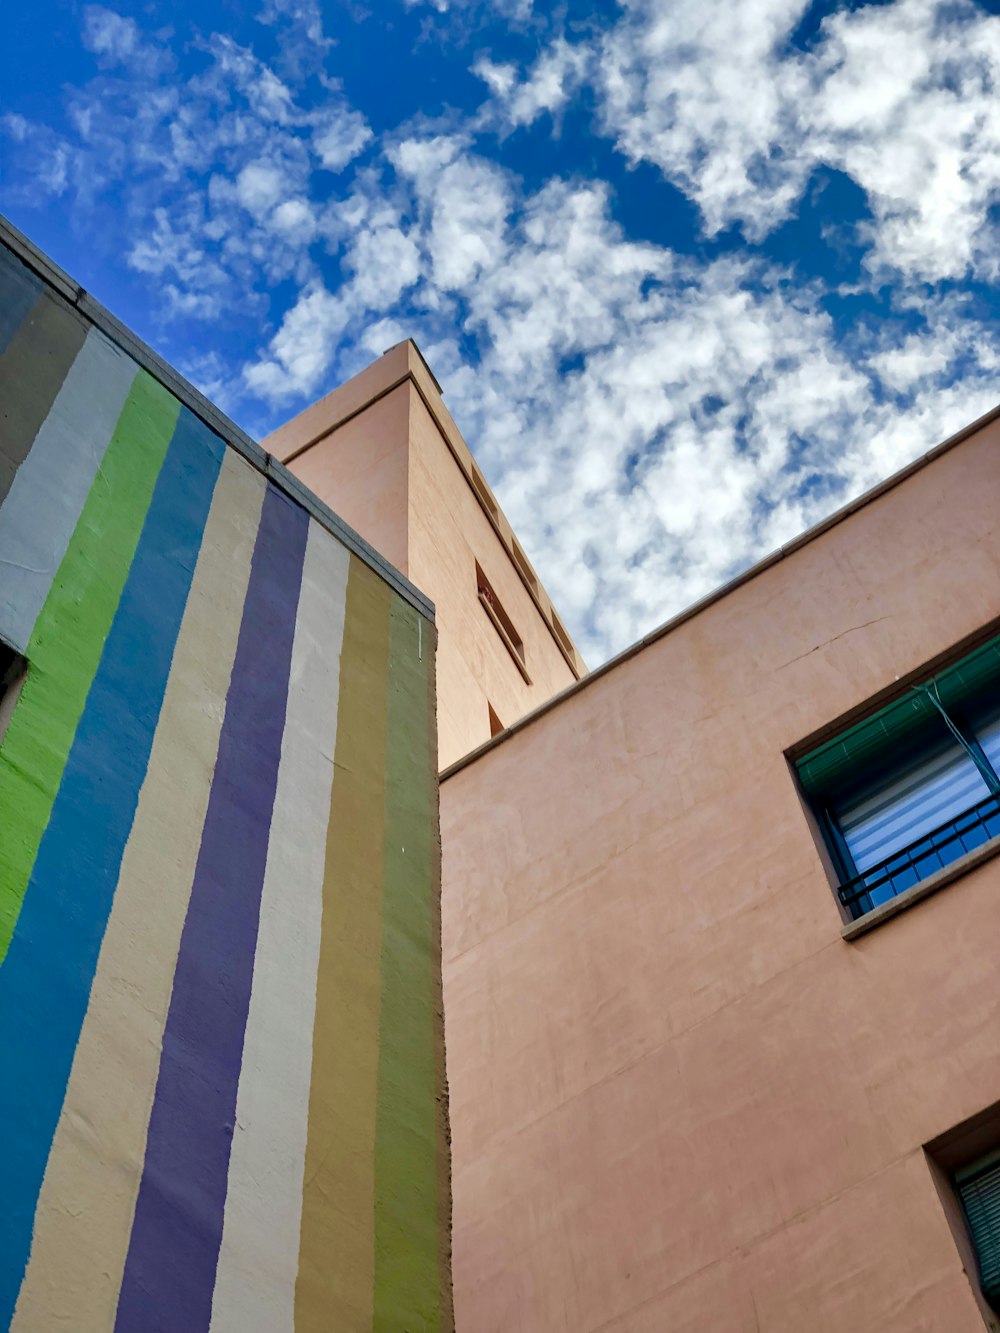 Edificio multicolor durante el día